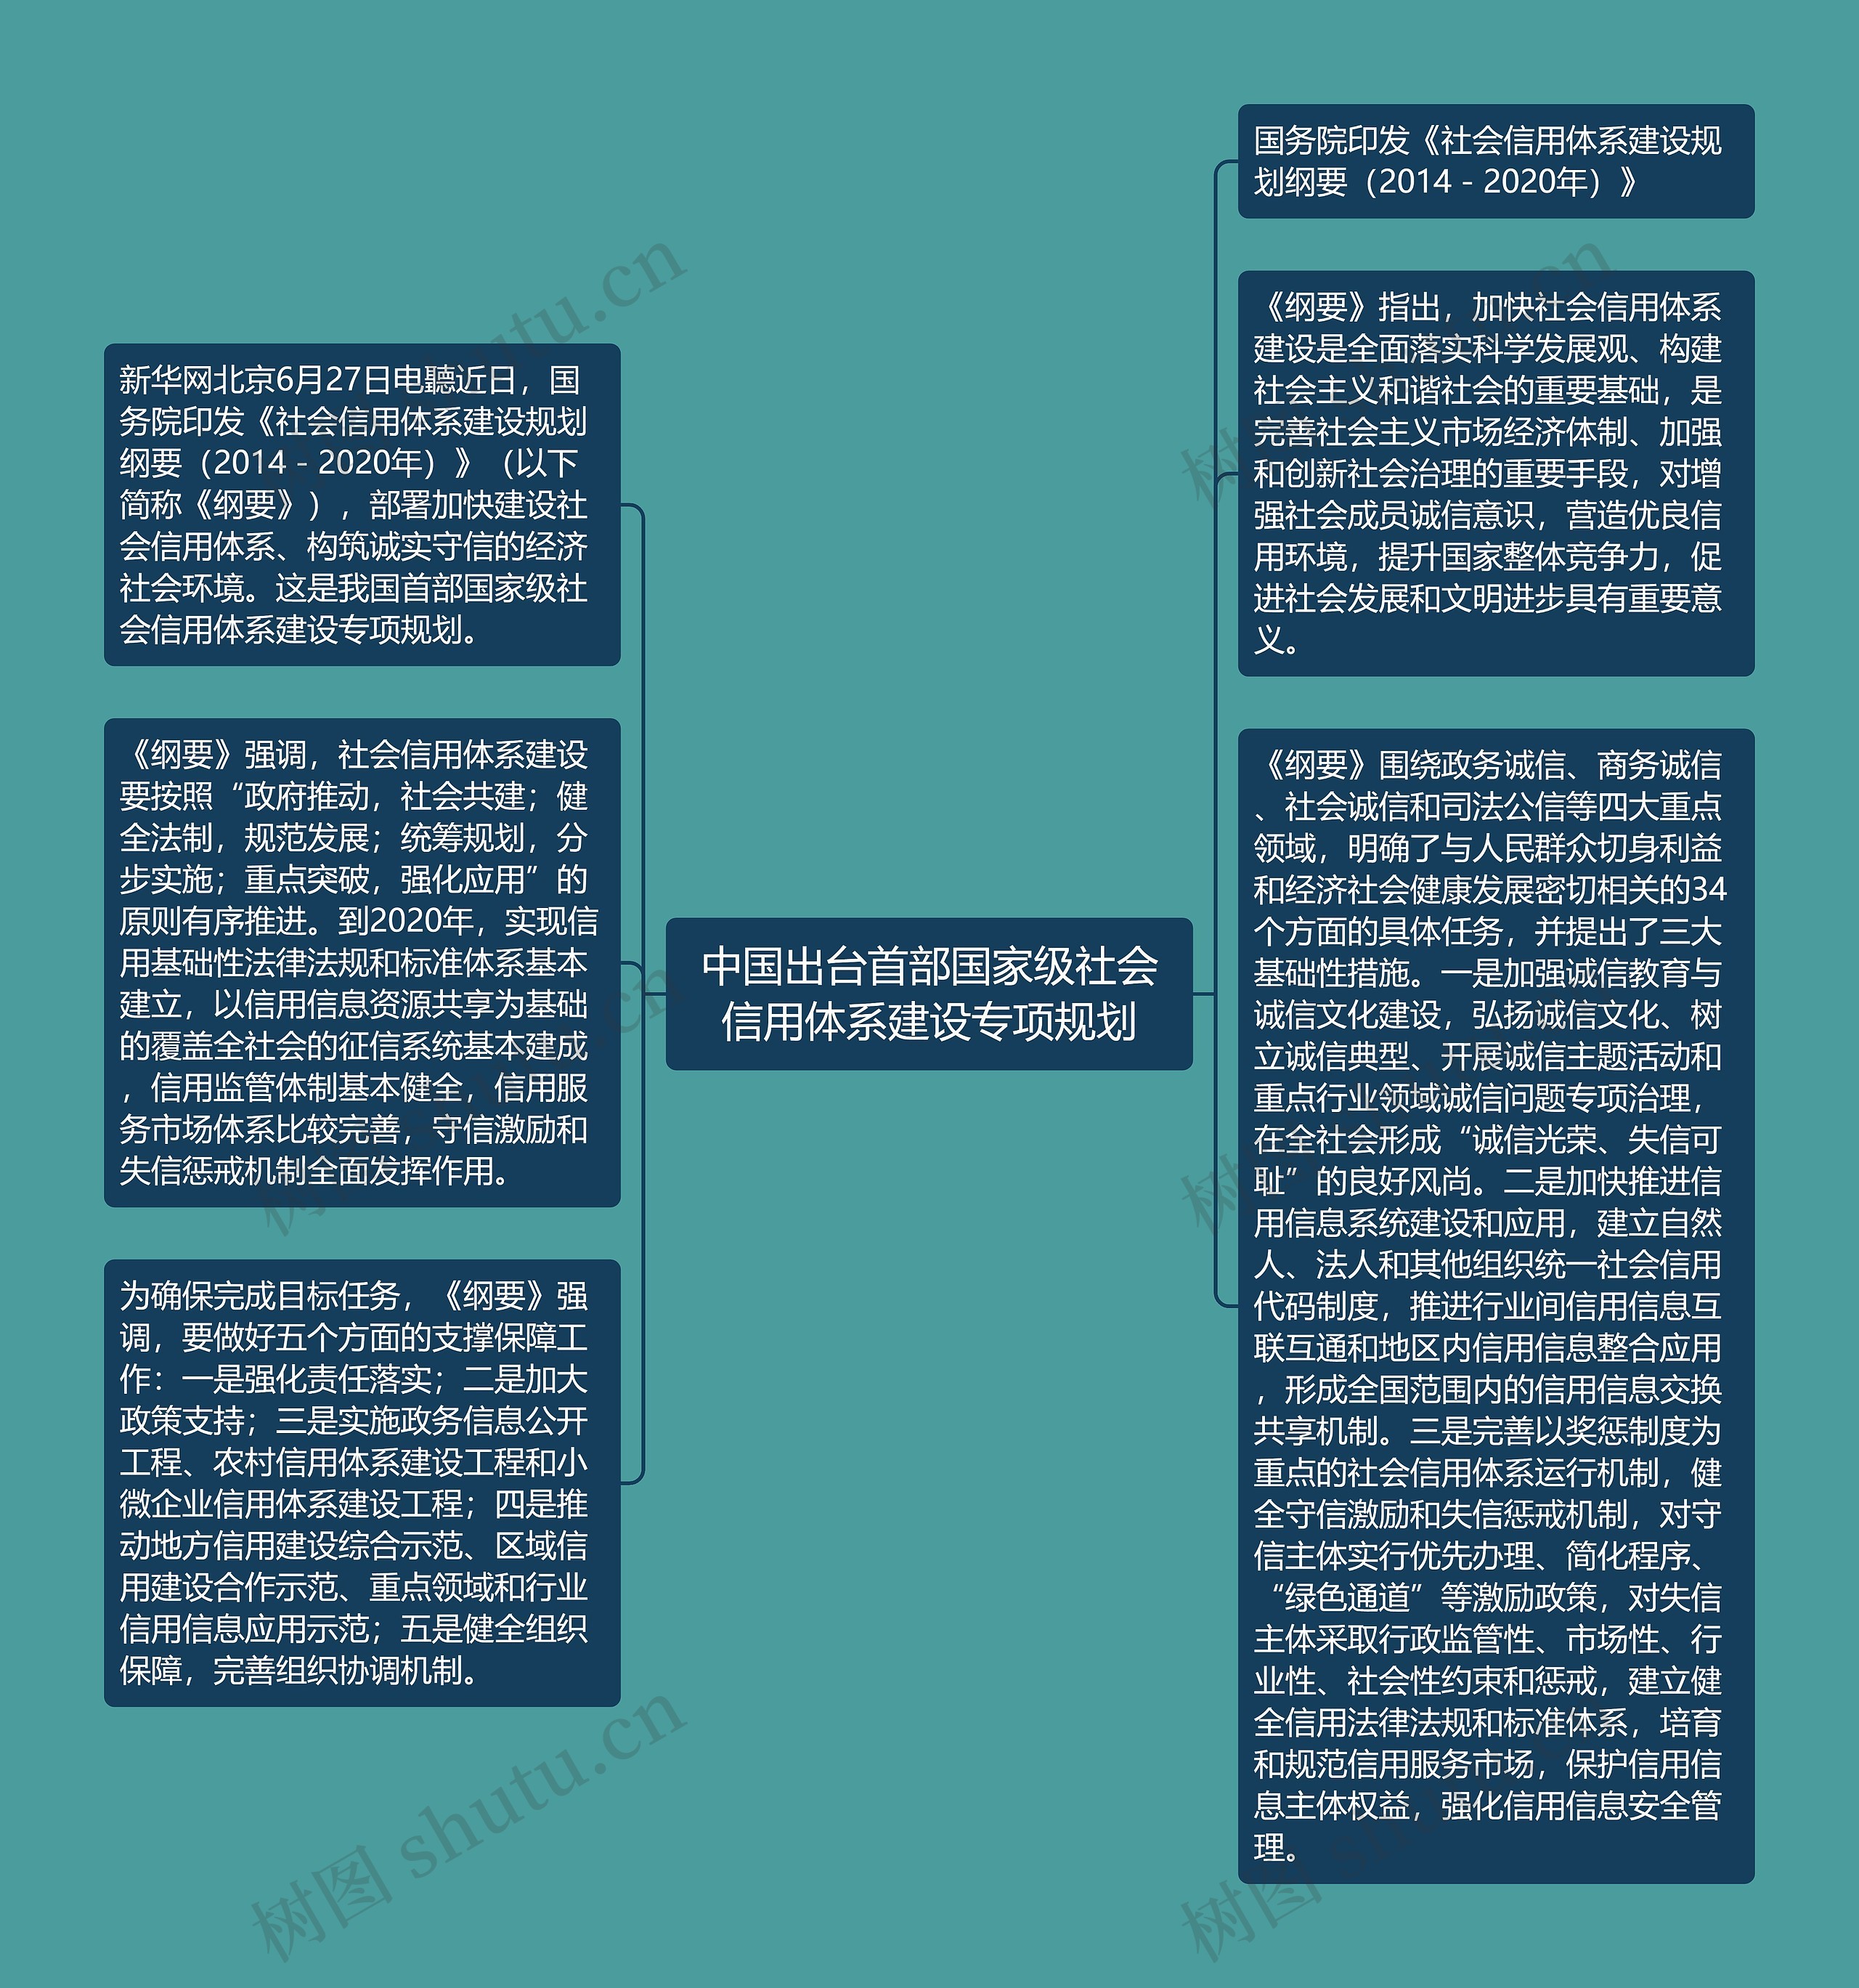 中国出台首部国家级社会信用体系建设专项规划思维导图